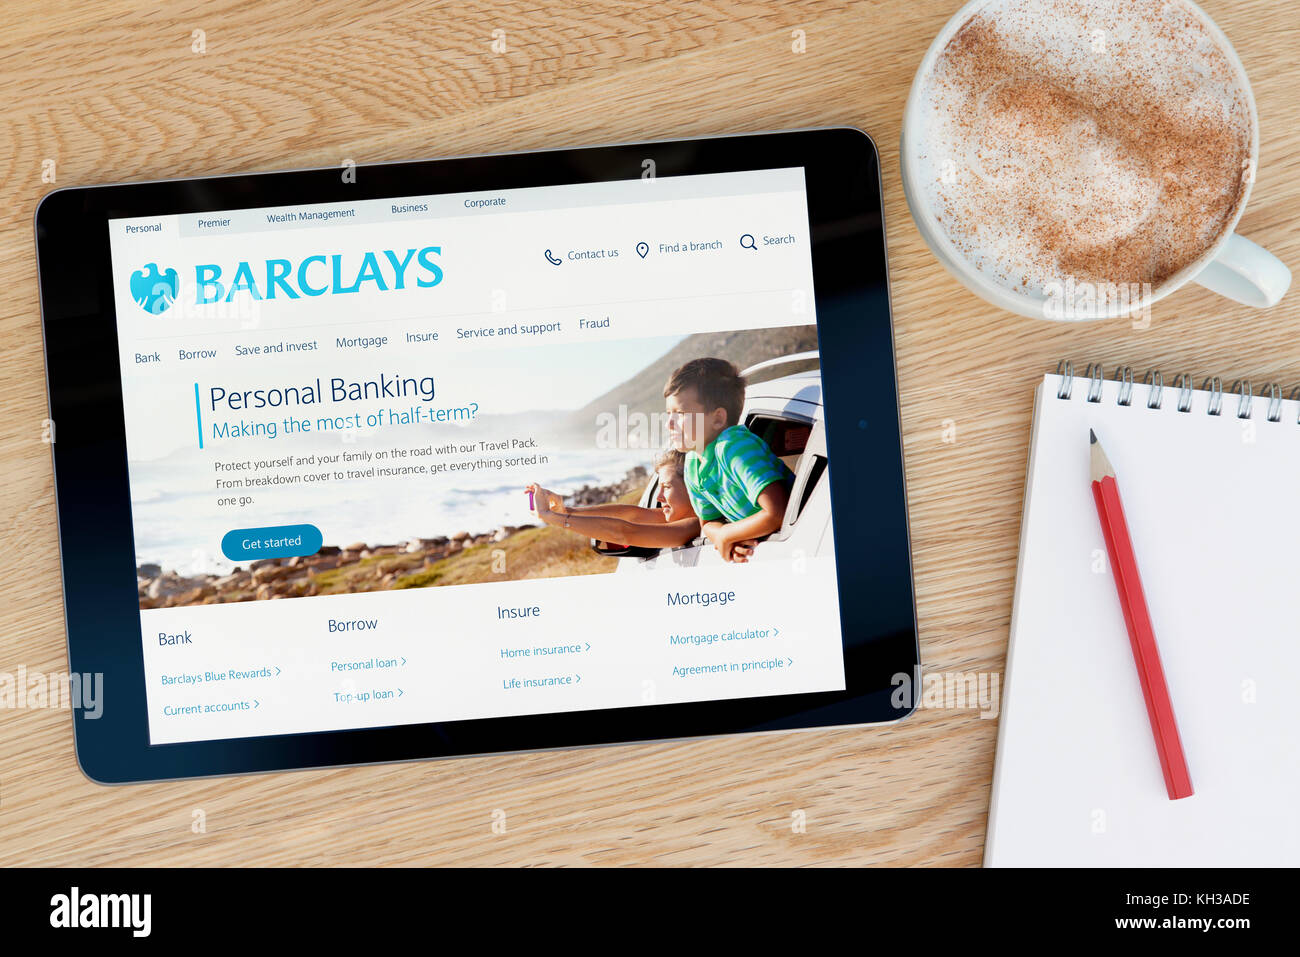 Le site web dispose d'un sur Barclays iPad tablet device qui repose sur une table en bois à côté d'un bloc-notes et un crayon et une tasse de café (rédaction uniquement) Banque D'Images